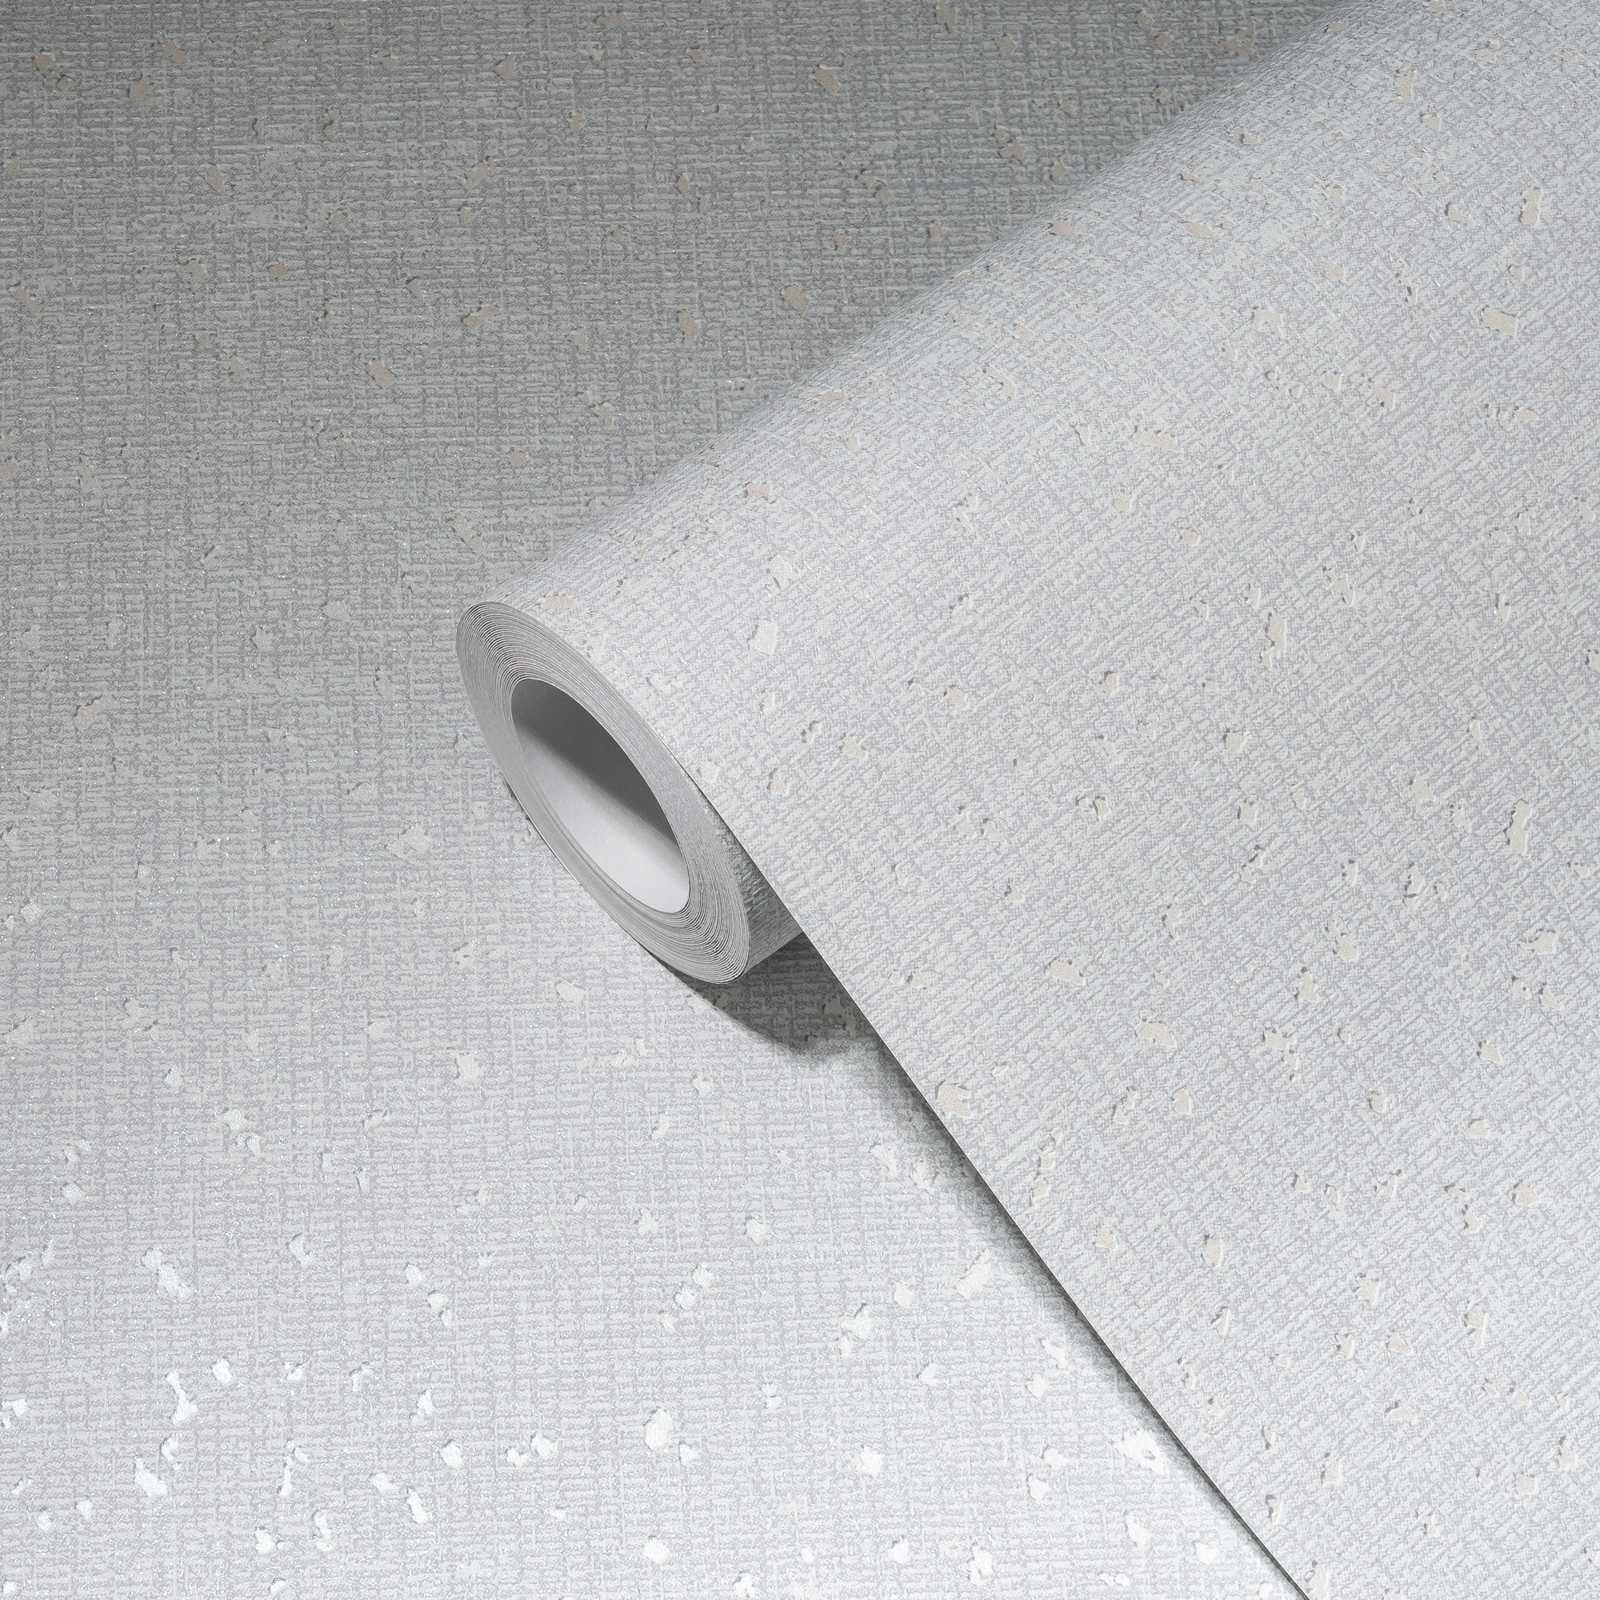             Papier peint à texture textile et accents métalliques - blanc, gris
        